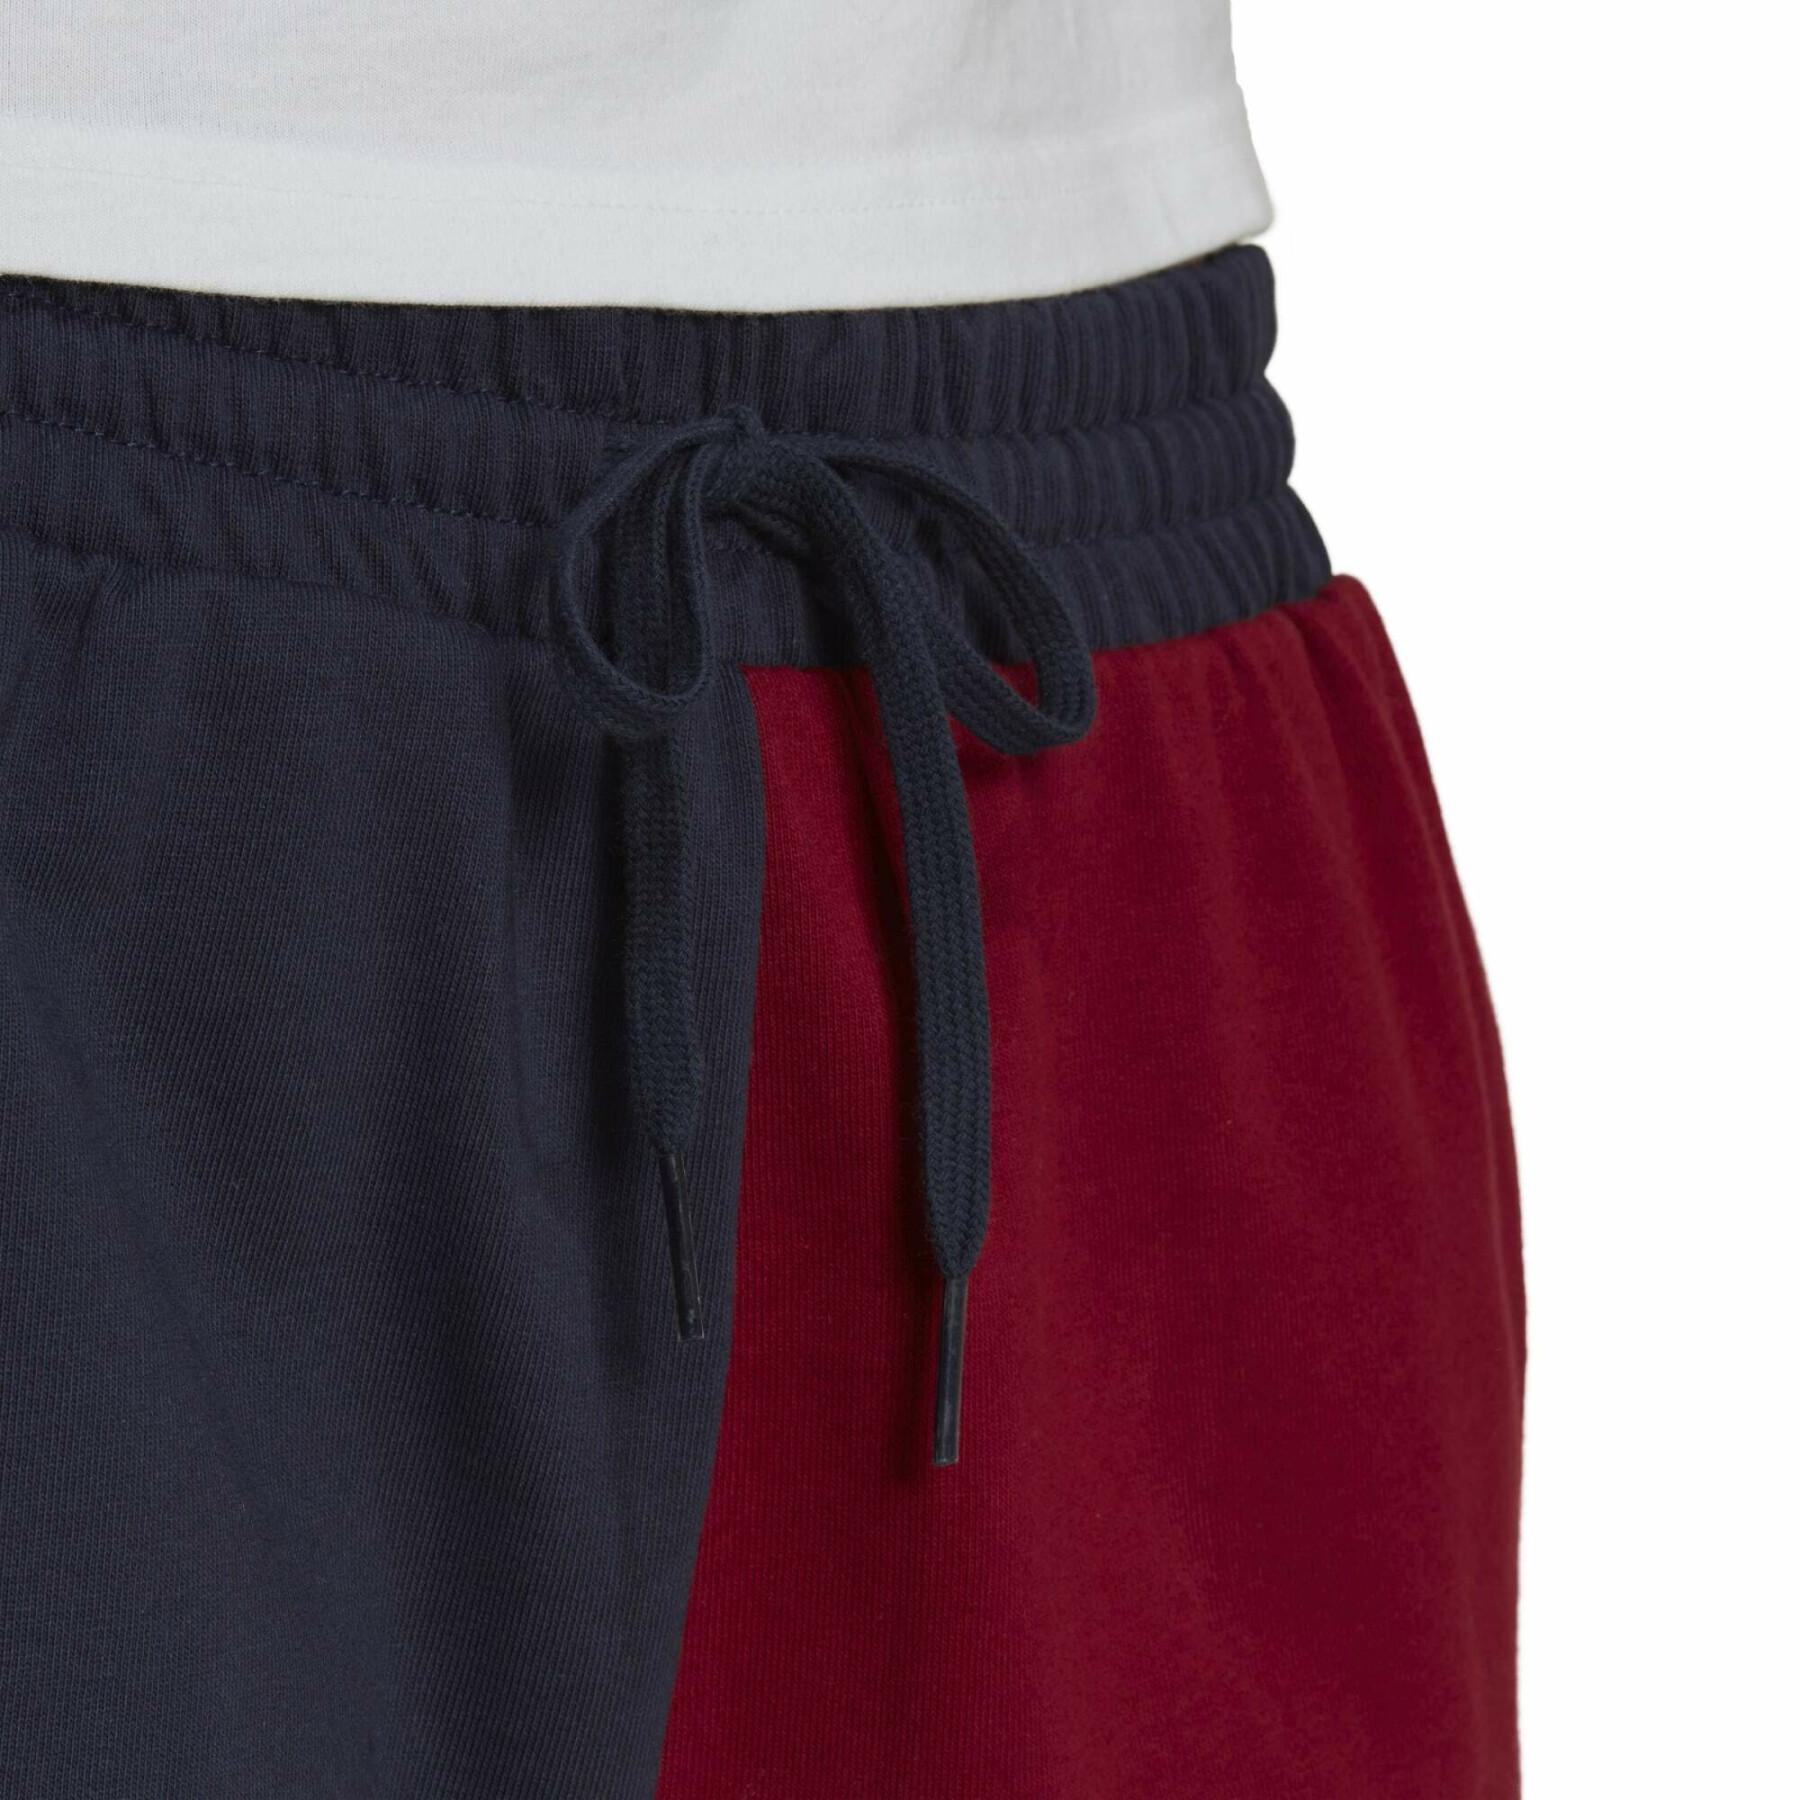 Colorblock Shorts Frau adidas Essentials